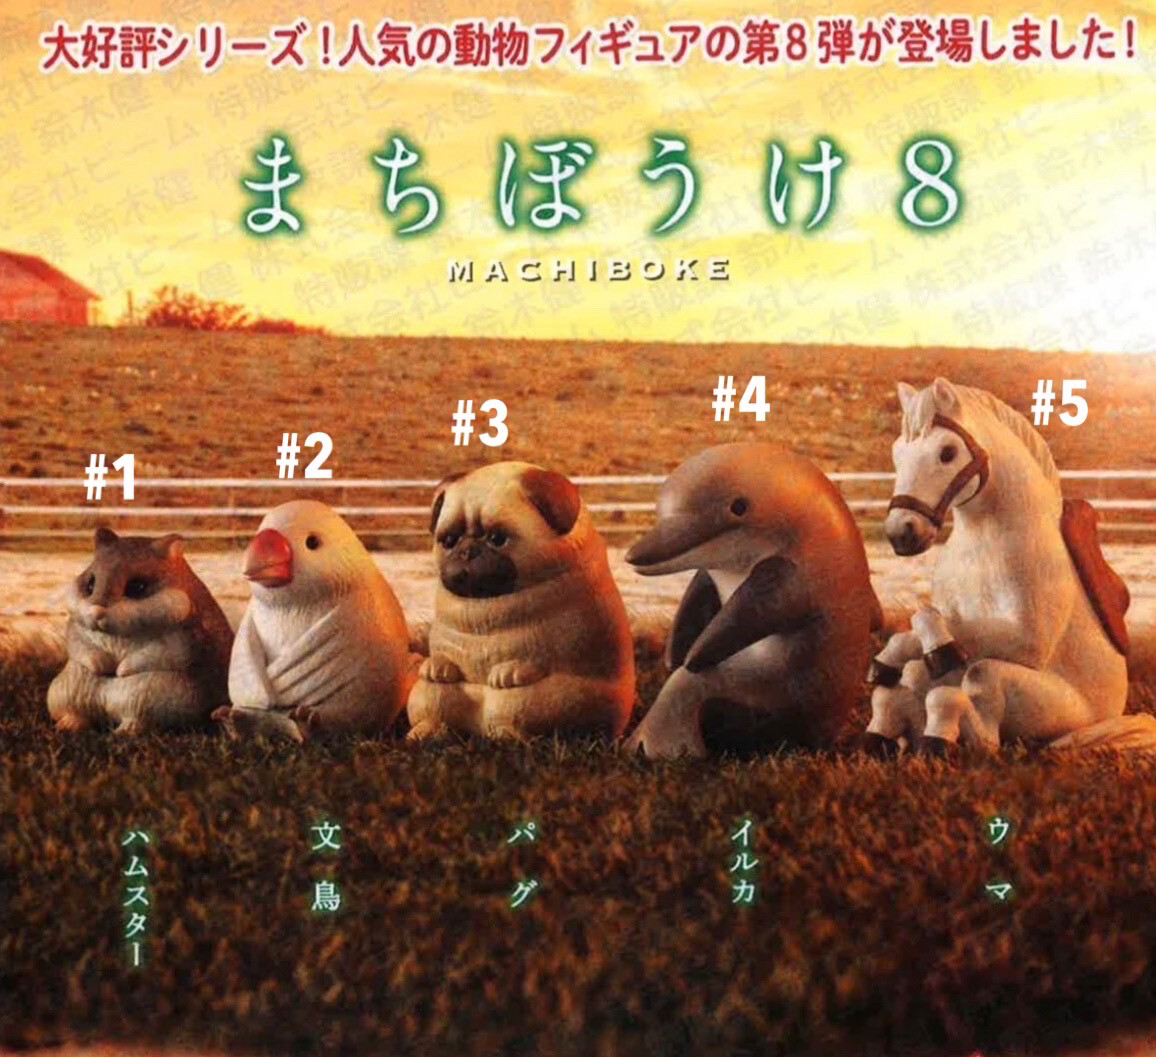 Bandai Machiboke Animal Waiting Part 8 Gashapon